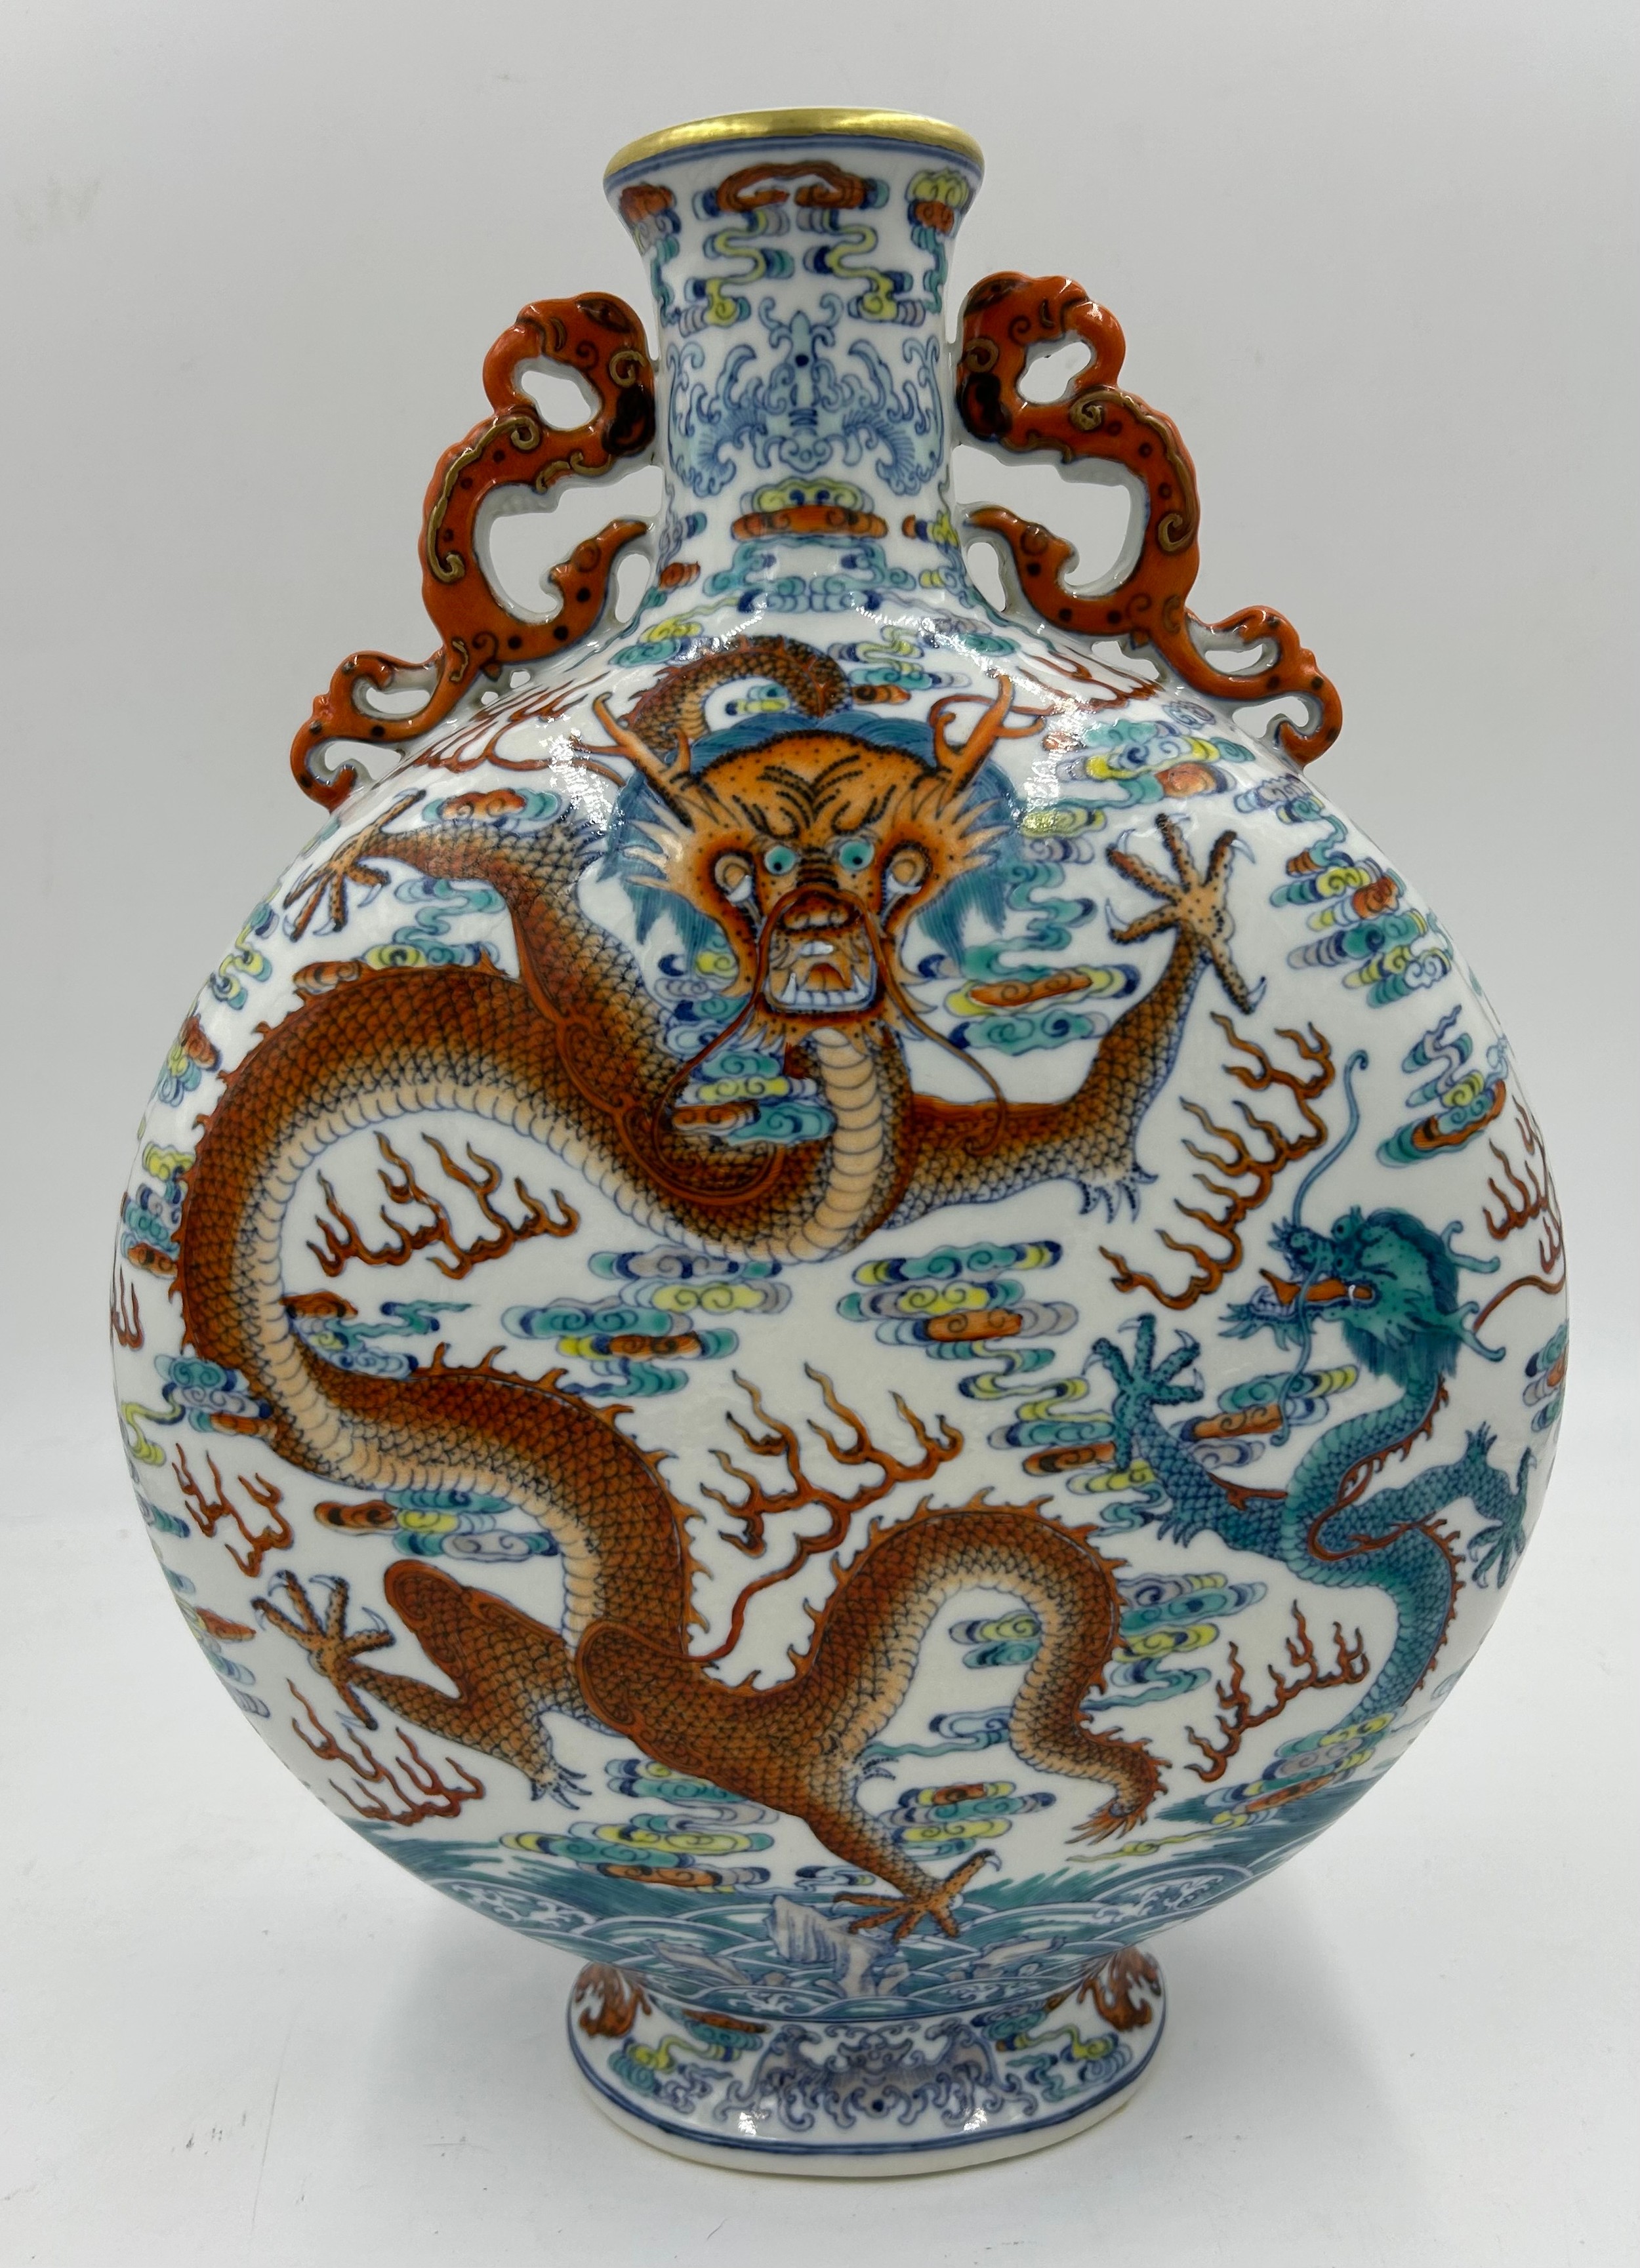 A 20thC Chinese Douai porcelain dragon double handle moon flask vase. 39cm h x 29cm w.